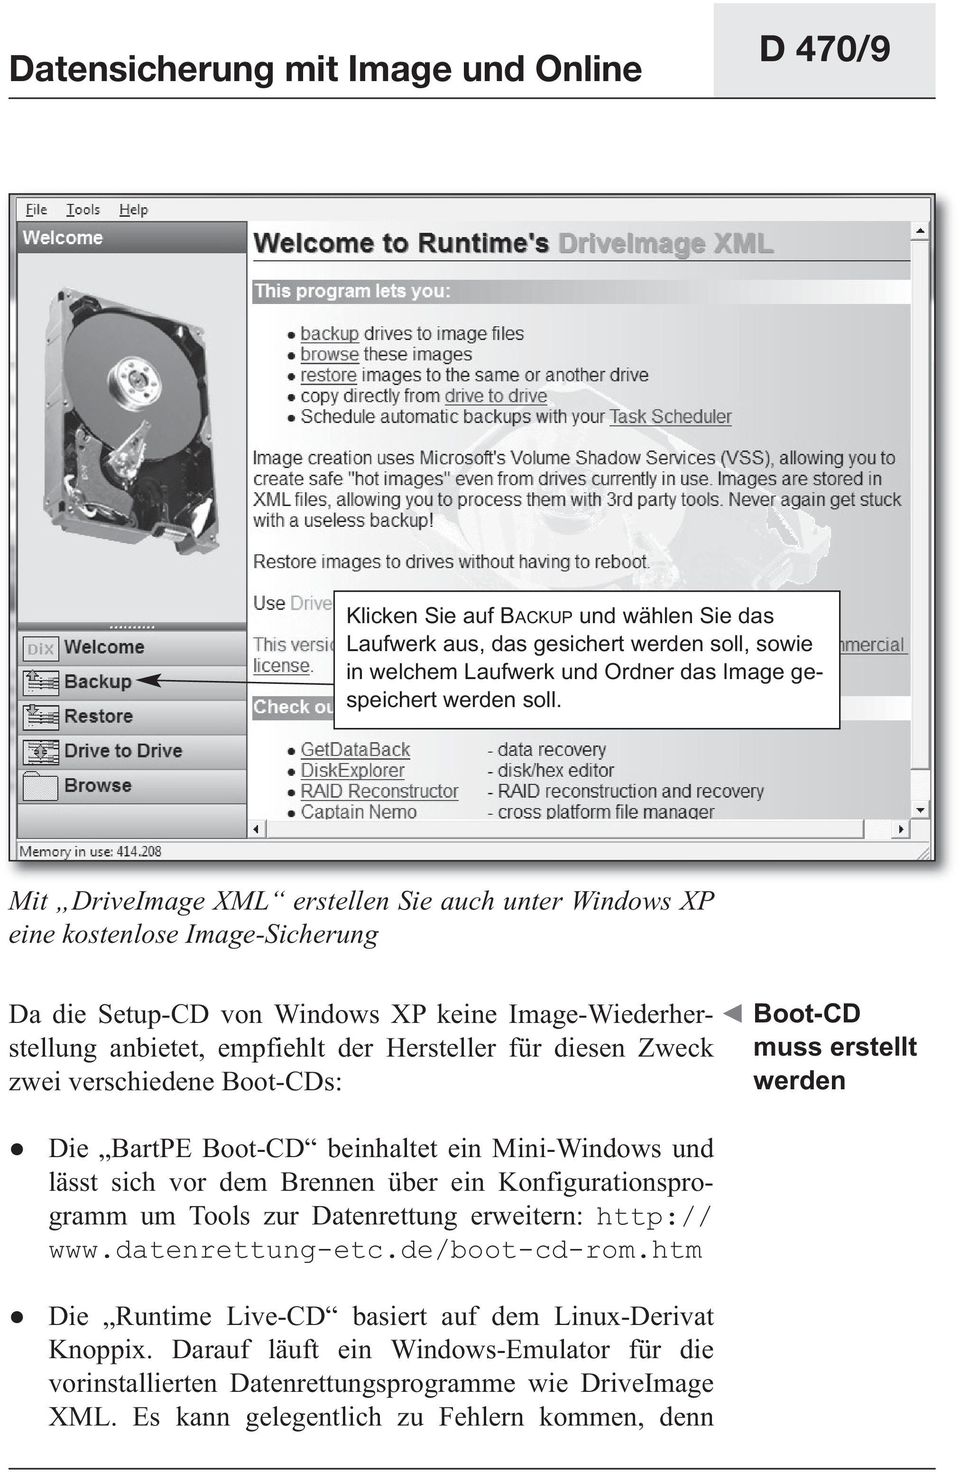 zwei verschiedene Boot-CDs: Boot-CD muss erstellt werden Die BartPE Boot-CD beinhaltet ein Mini-Windows und lässt sich vor dem Brennen über ein Konfigurationsprogramm um Tools zur Datenrettung